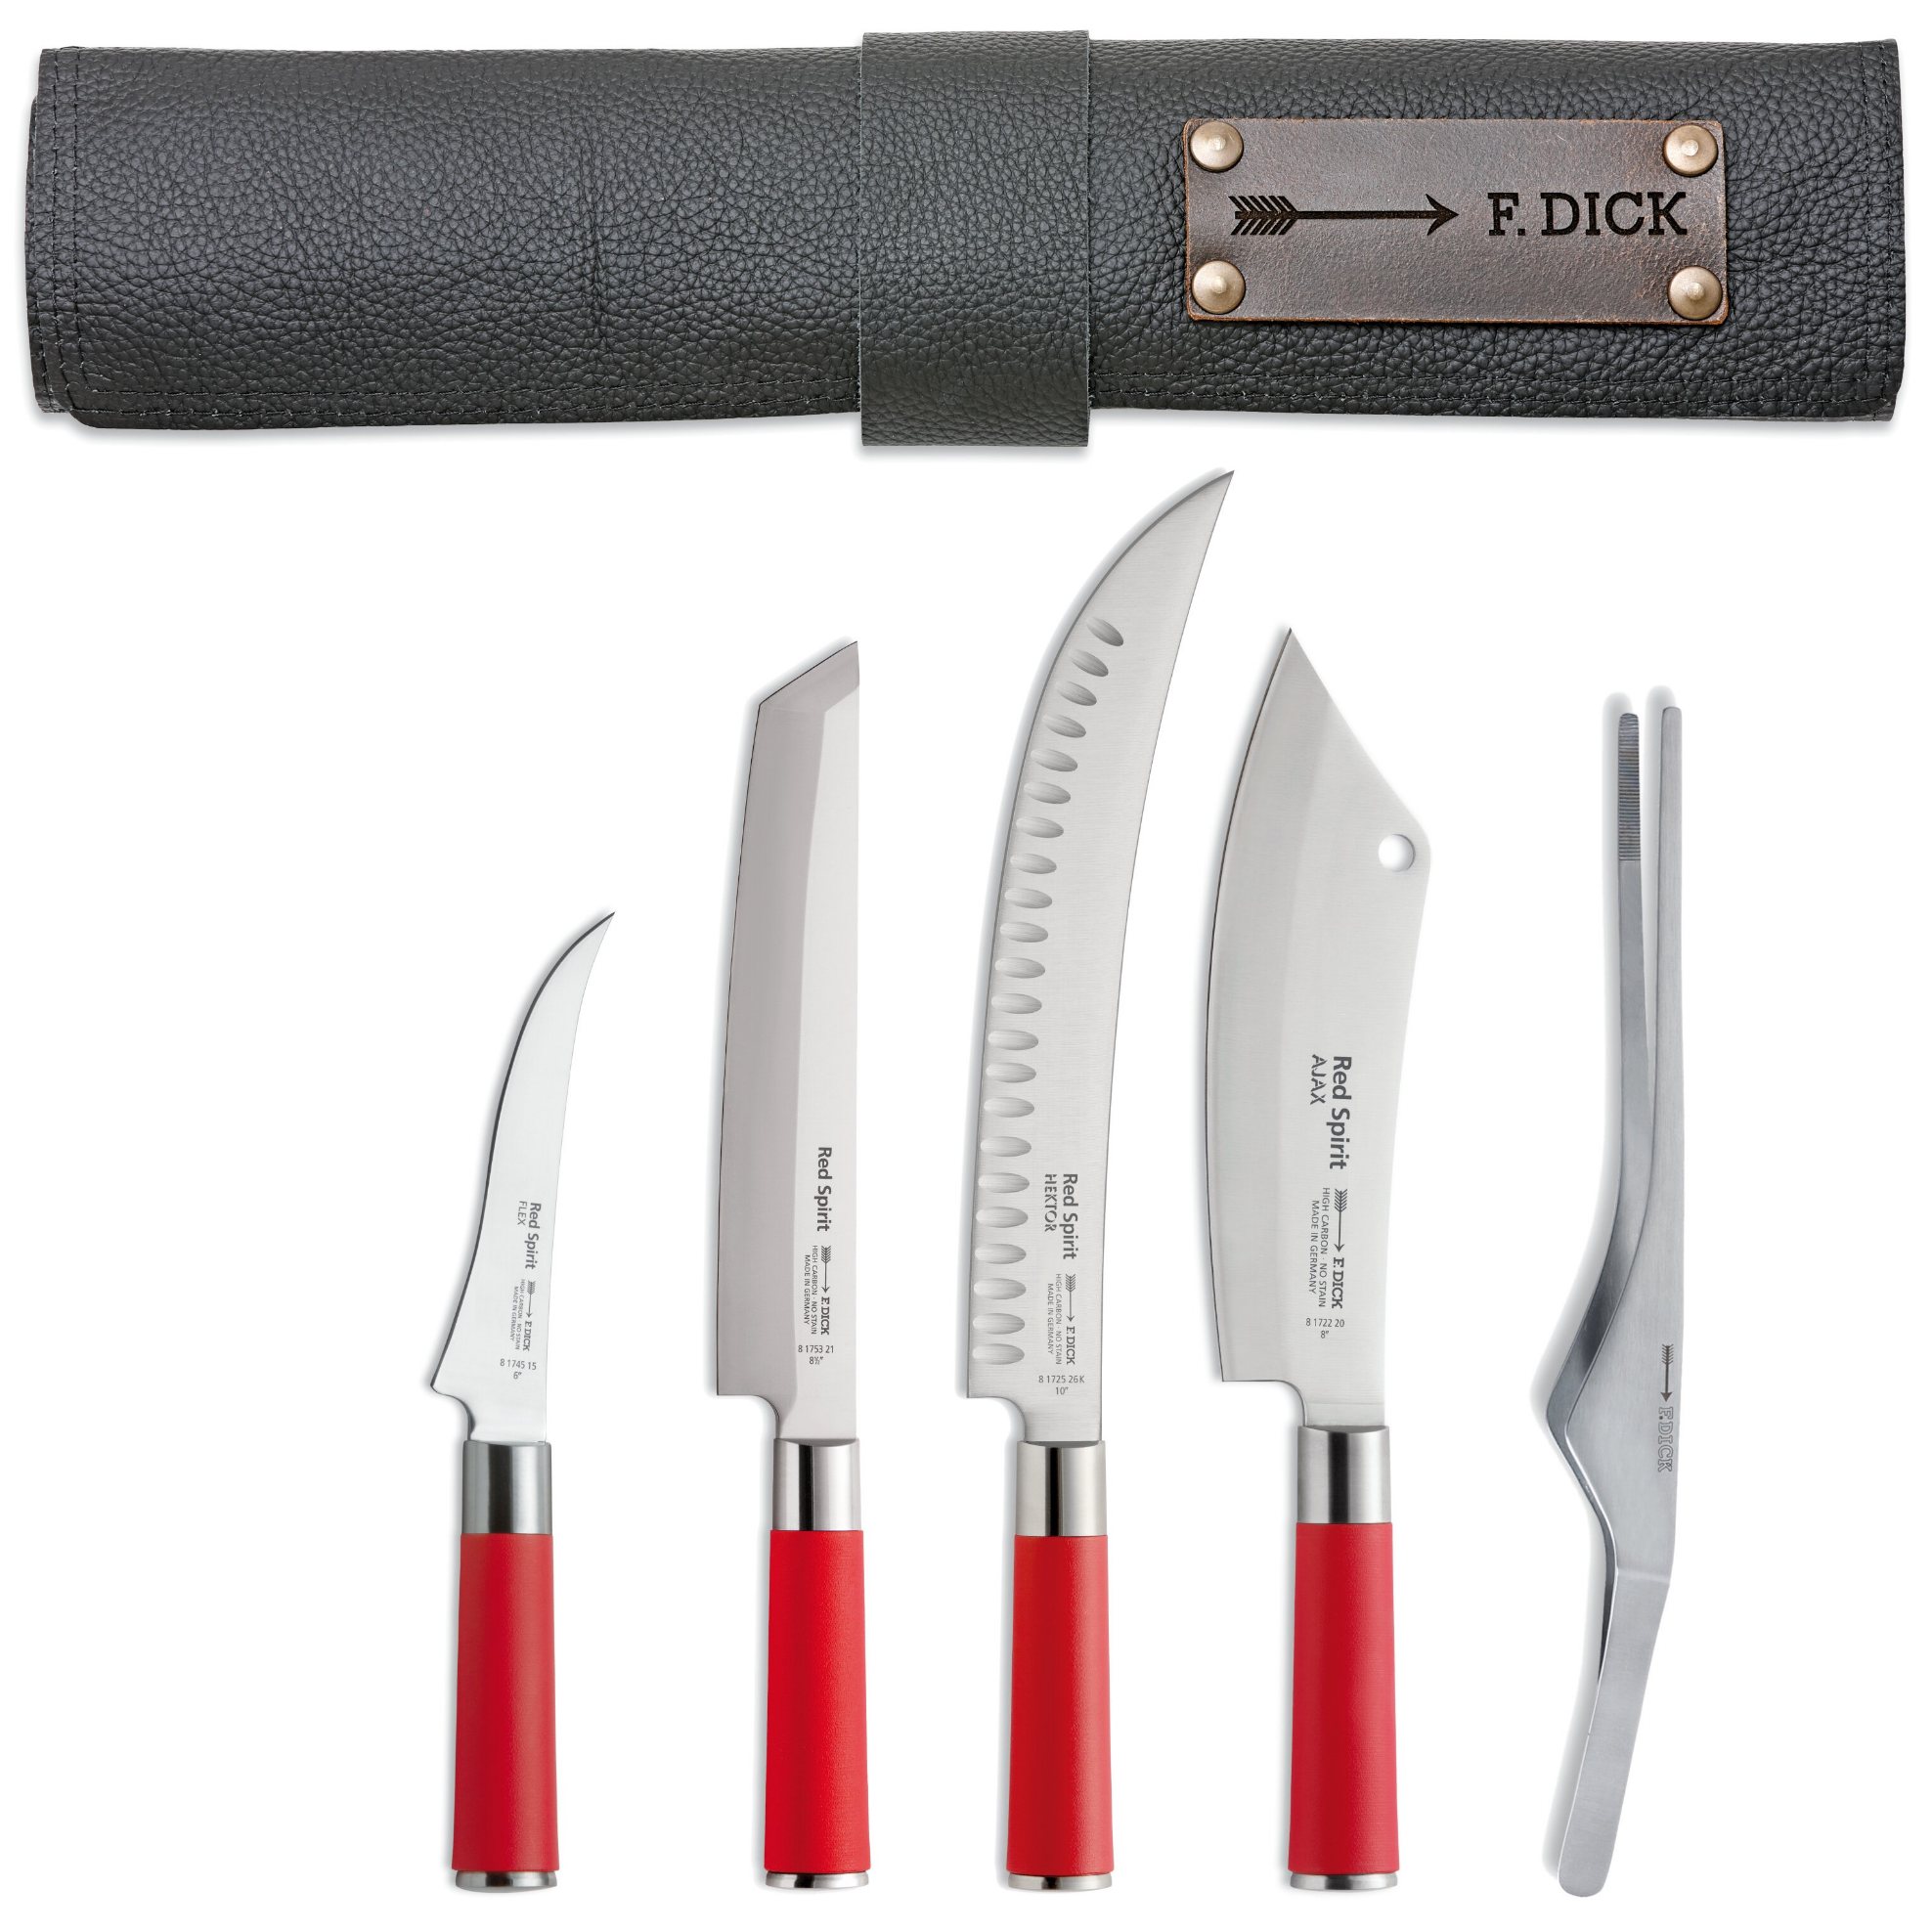 Kuchyňské nože RED SPIRIT s pouzdrem, sada 5 ks, nerezová ocel, F.DICK